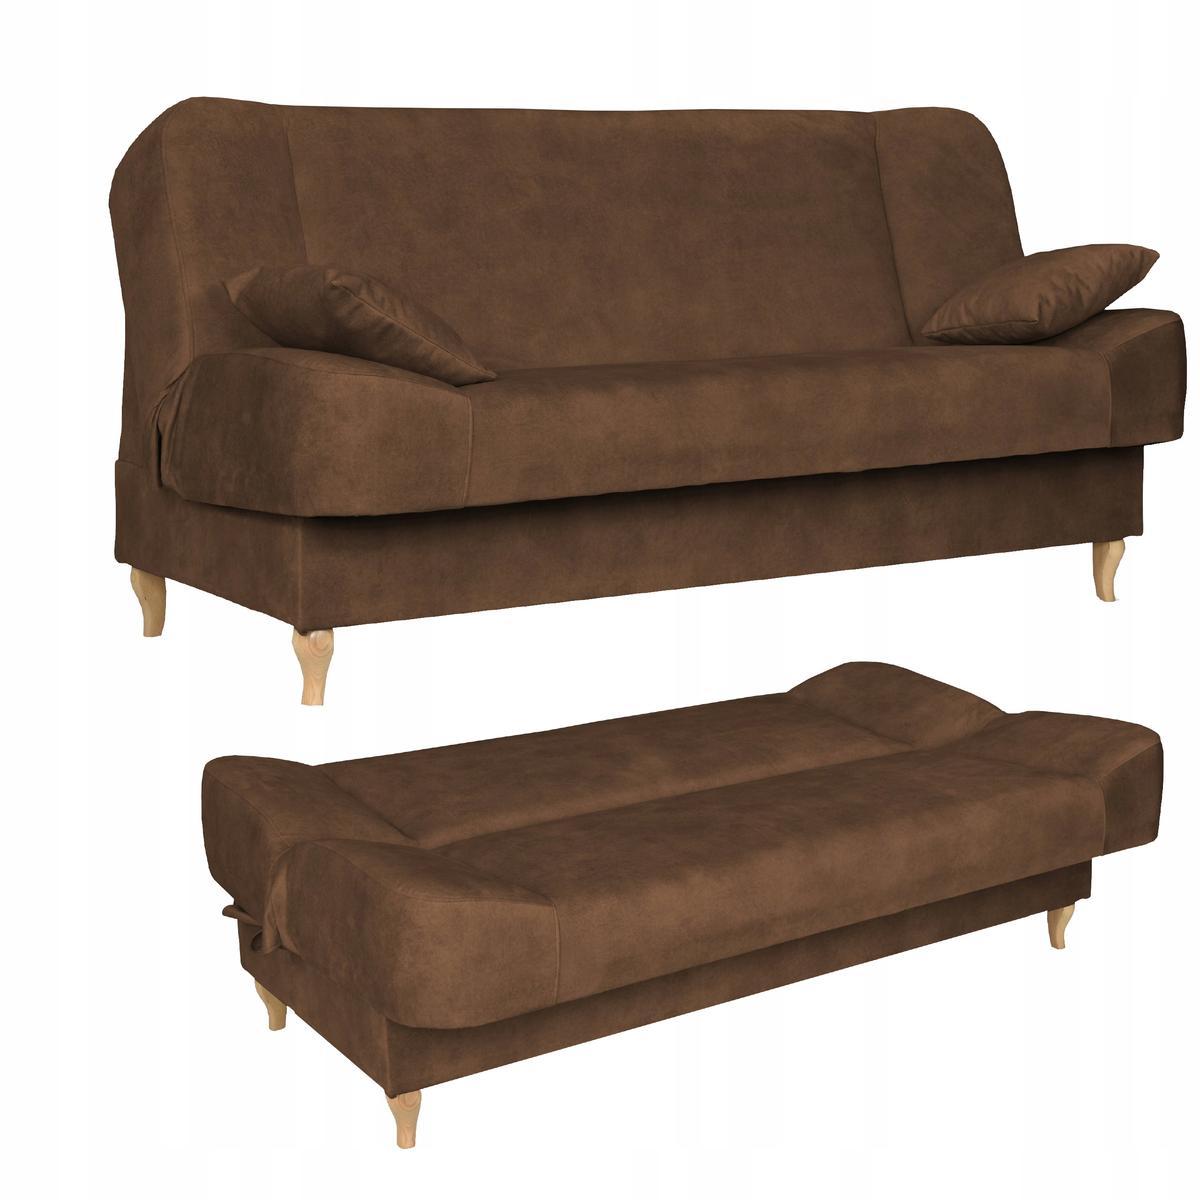 Wersalka SARA 200x95 cm brązowa rozkładana kanapa z pojemnikiem sofa do salonu Aura nr. 1